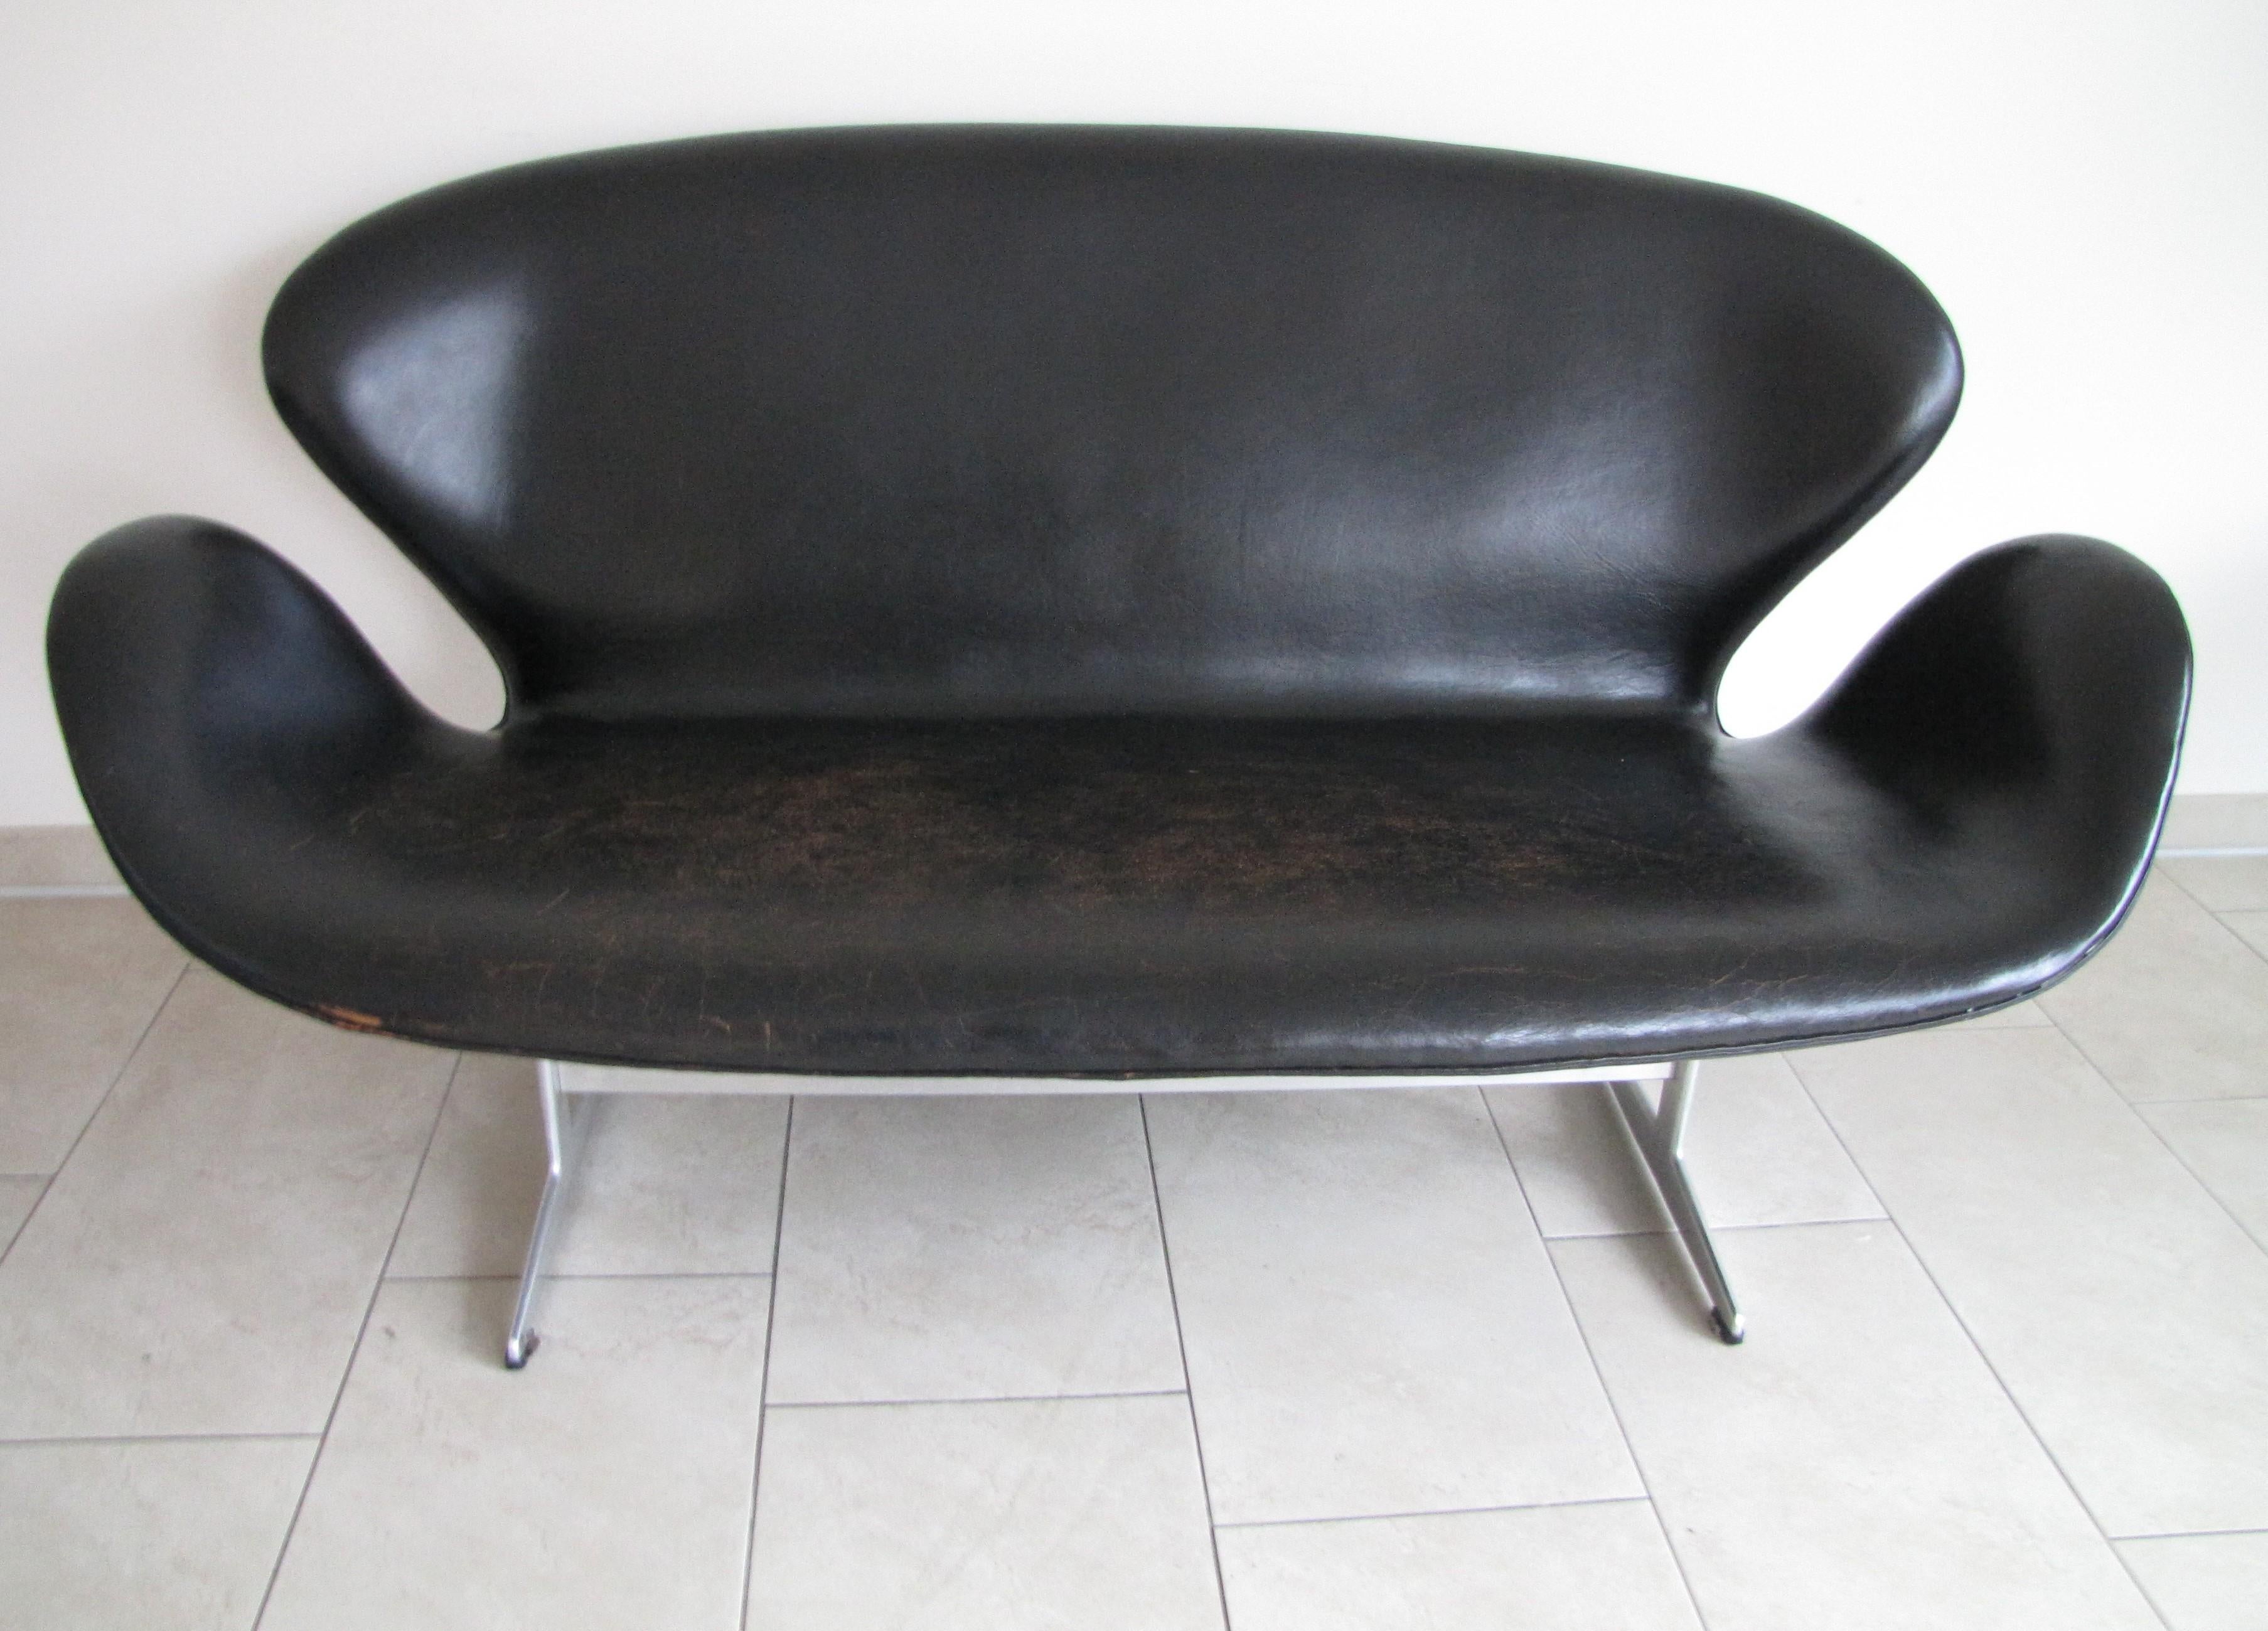 Magnifique canapé en cygne patiné d'Arne Jacobsen pour Fritz Hansen
Mod 3321
Première version avec cuir d'origine 
pas de marques 
